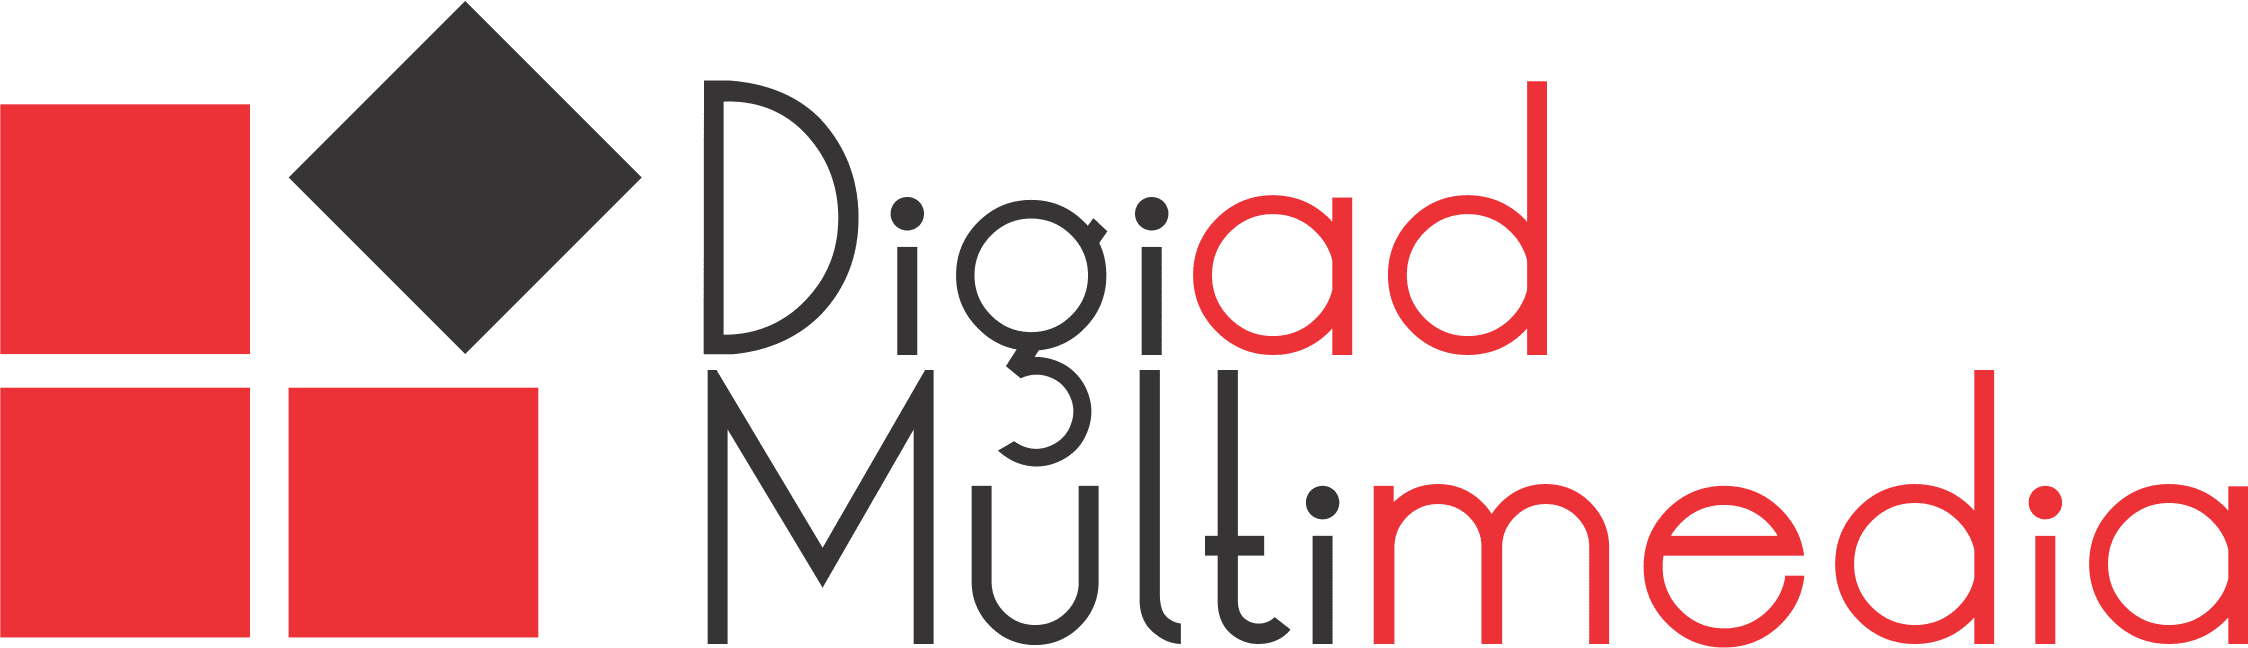 Digiad Multimedia Logo